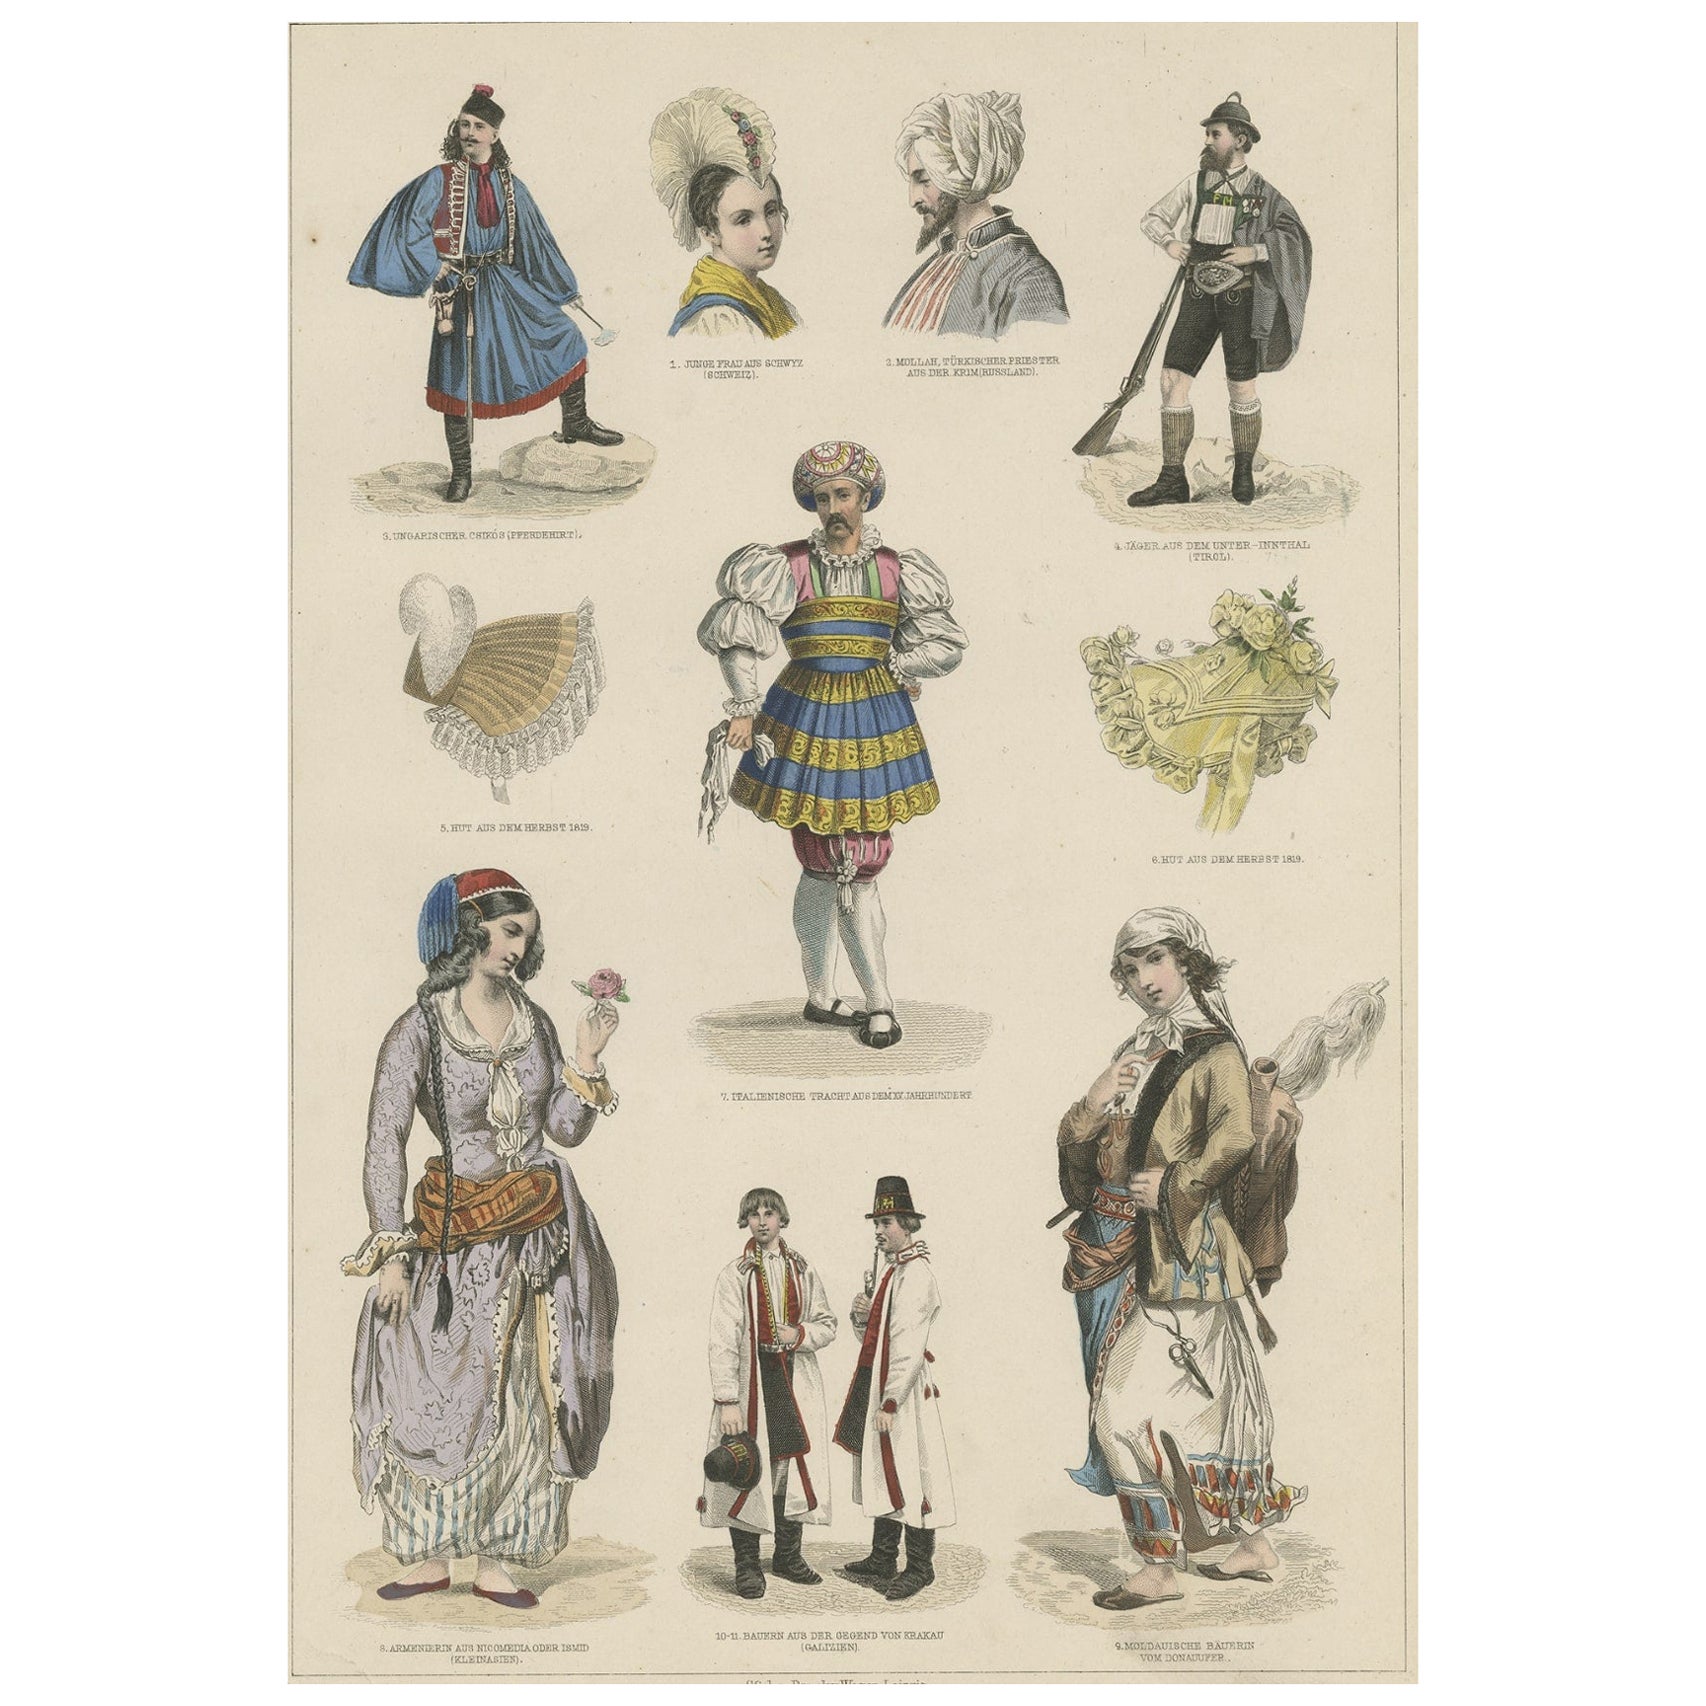 Antiker Kostümdruck von Kostümen aus der Schweiz, Tirol, Asien und anderen Ländern, um 1875